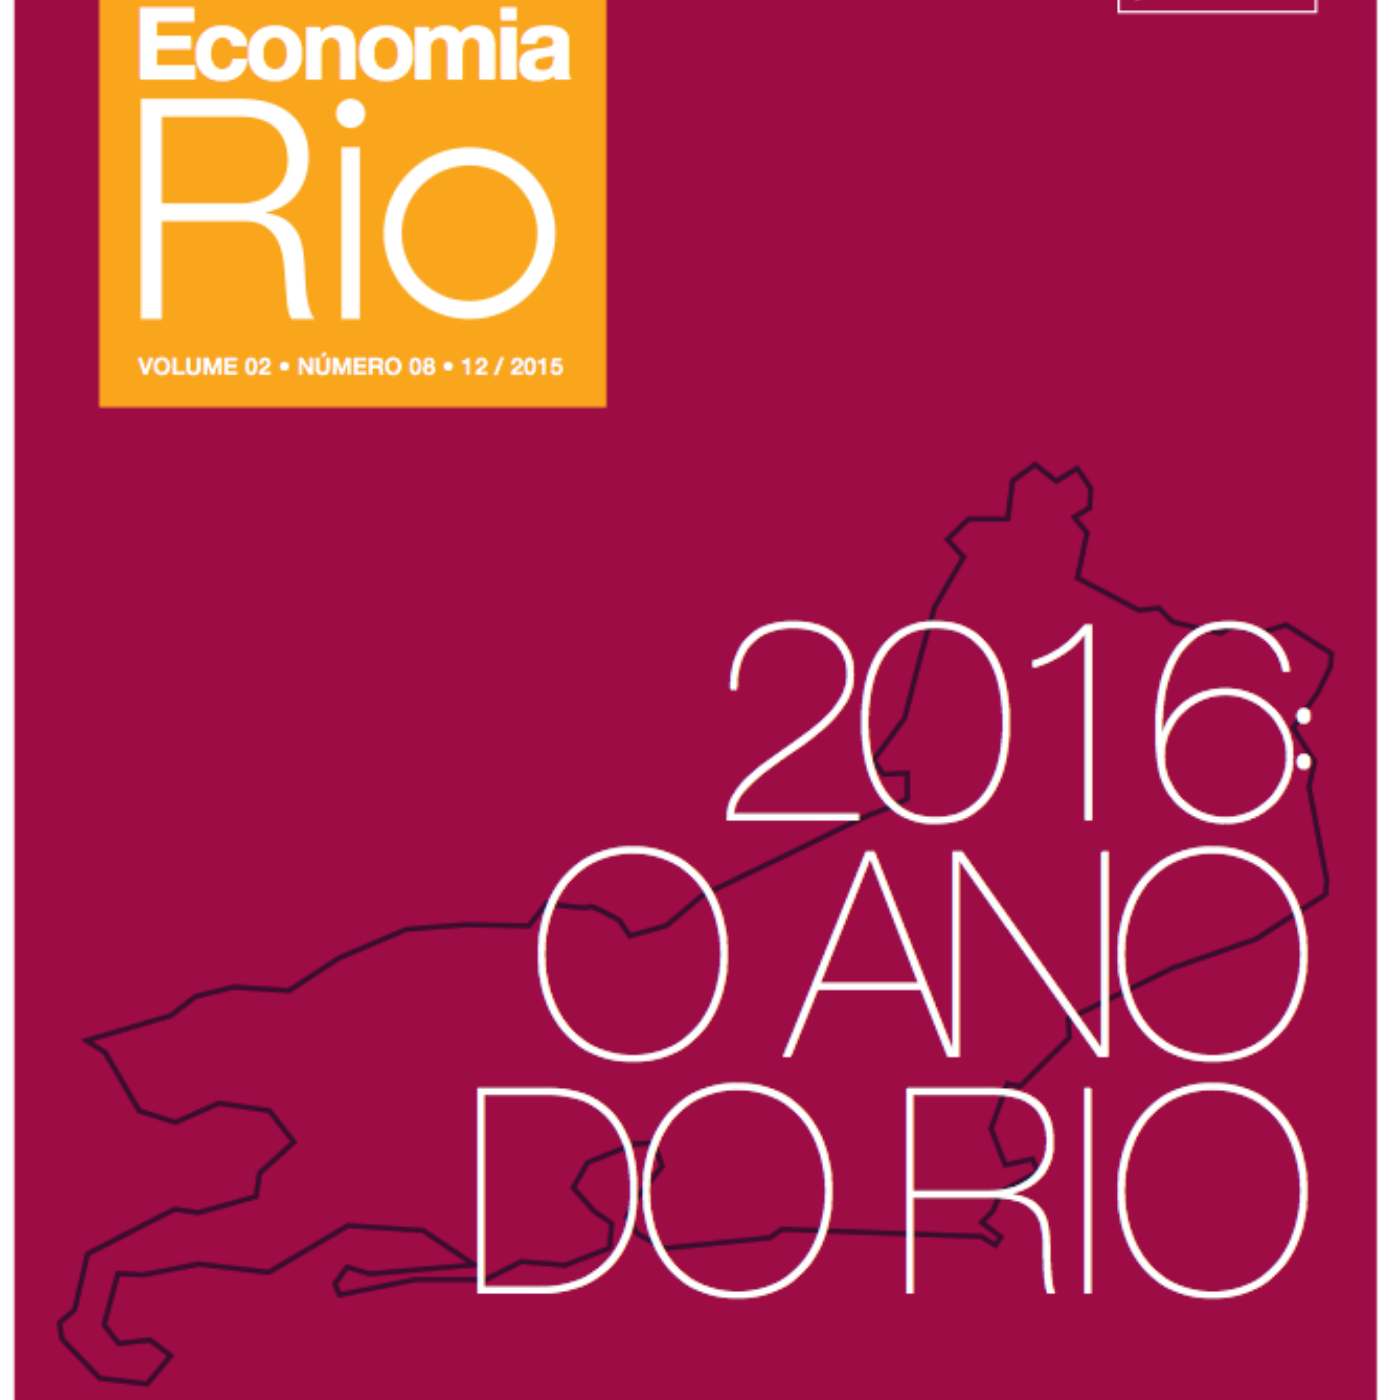 ITDP Brasil é citado na 8ª edição da Revista Economia Rio